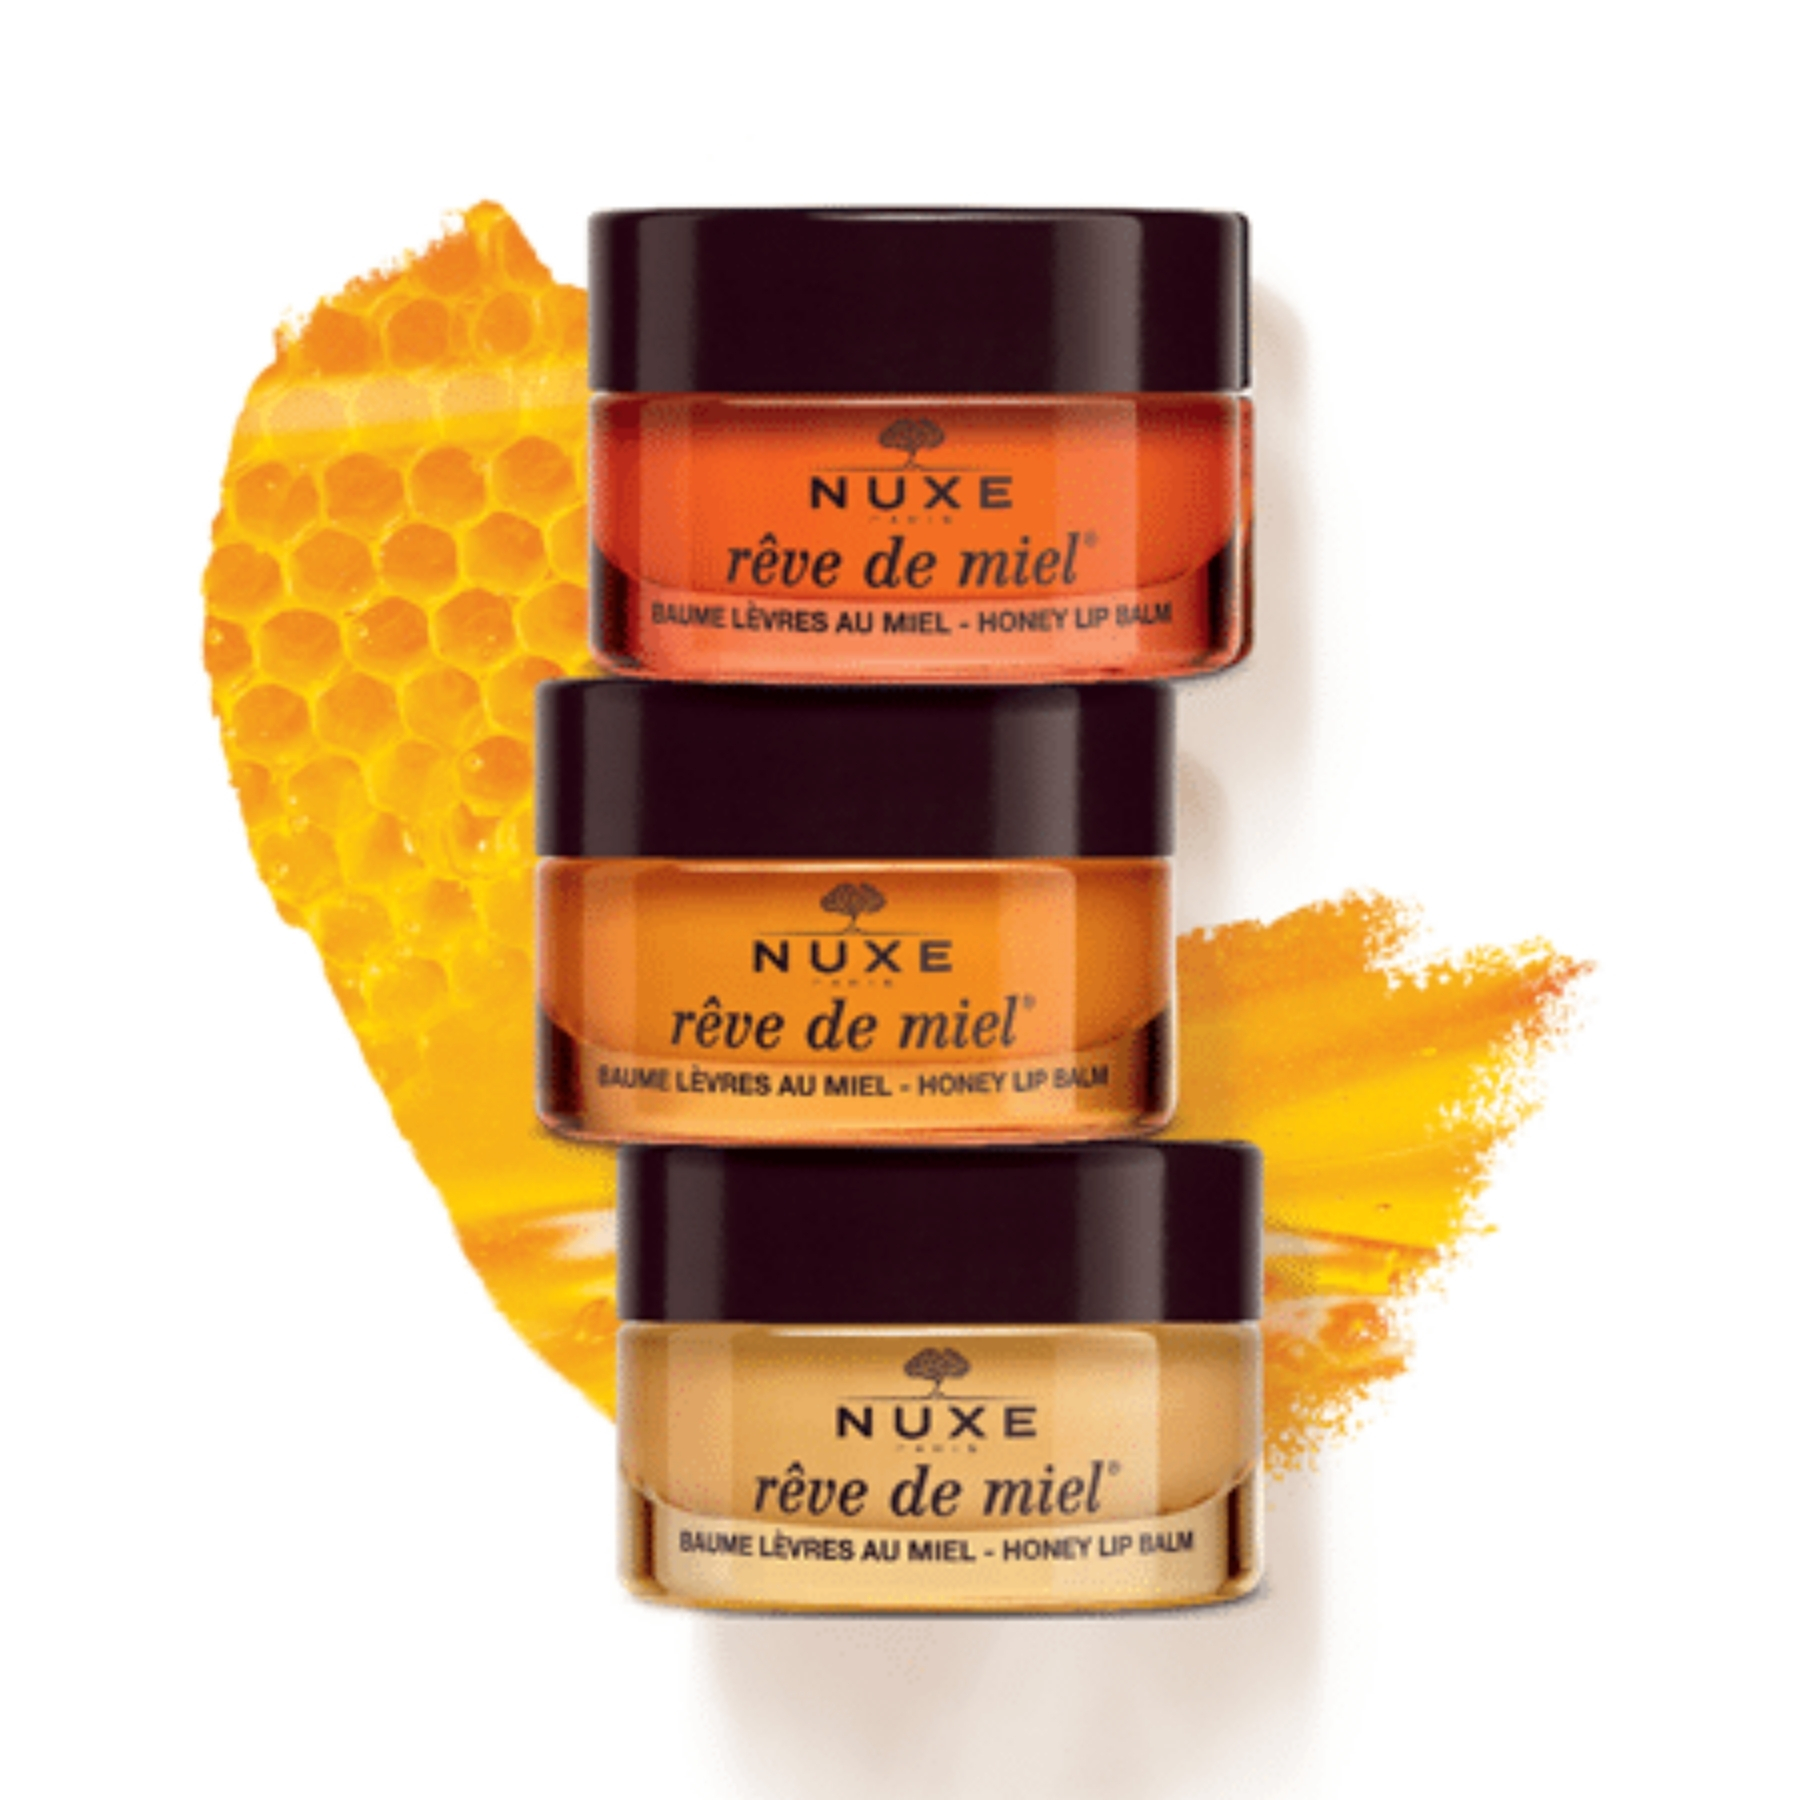 NUXE Rêve de Miel® Baume Levres au Miel Ultra-Nourrissant et Reparateur We Love Bees 15g Limited Edition